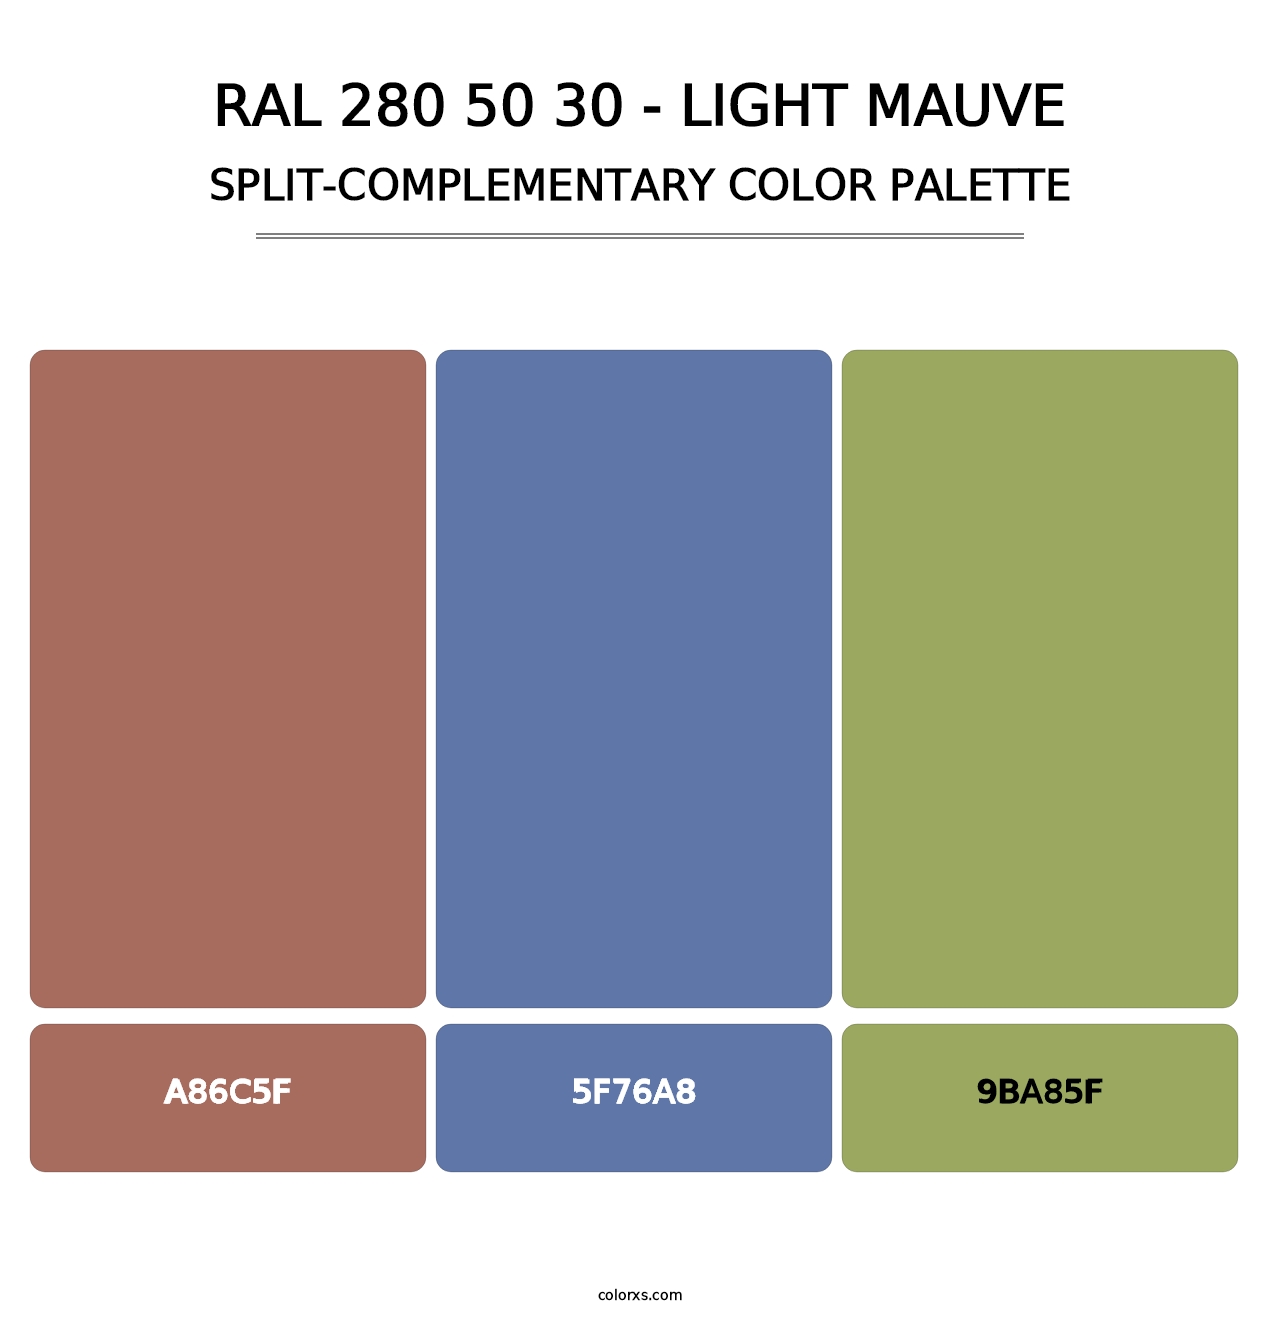 RAL 280 50 30 - Light Mauve - Split-Complementary Color Palette